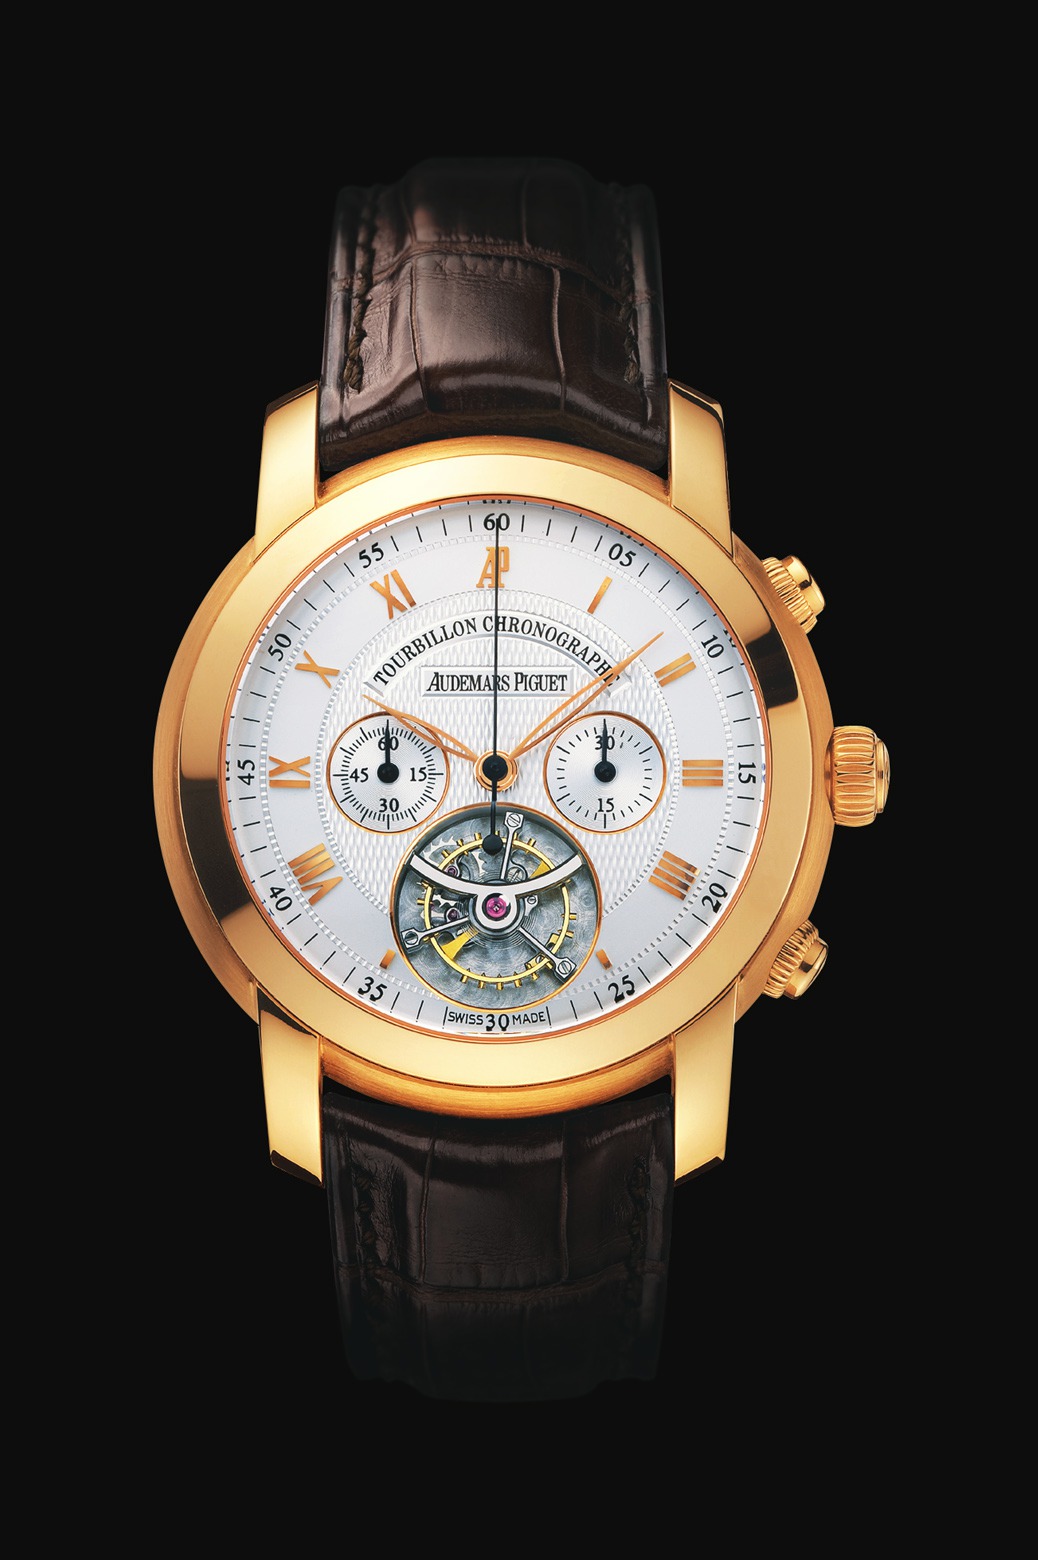 Audemars Piguet Jules Audemars Chronograph Tourbillon Pink Gold watch REF: 26010OR.OO.D088CR.01